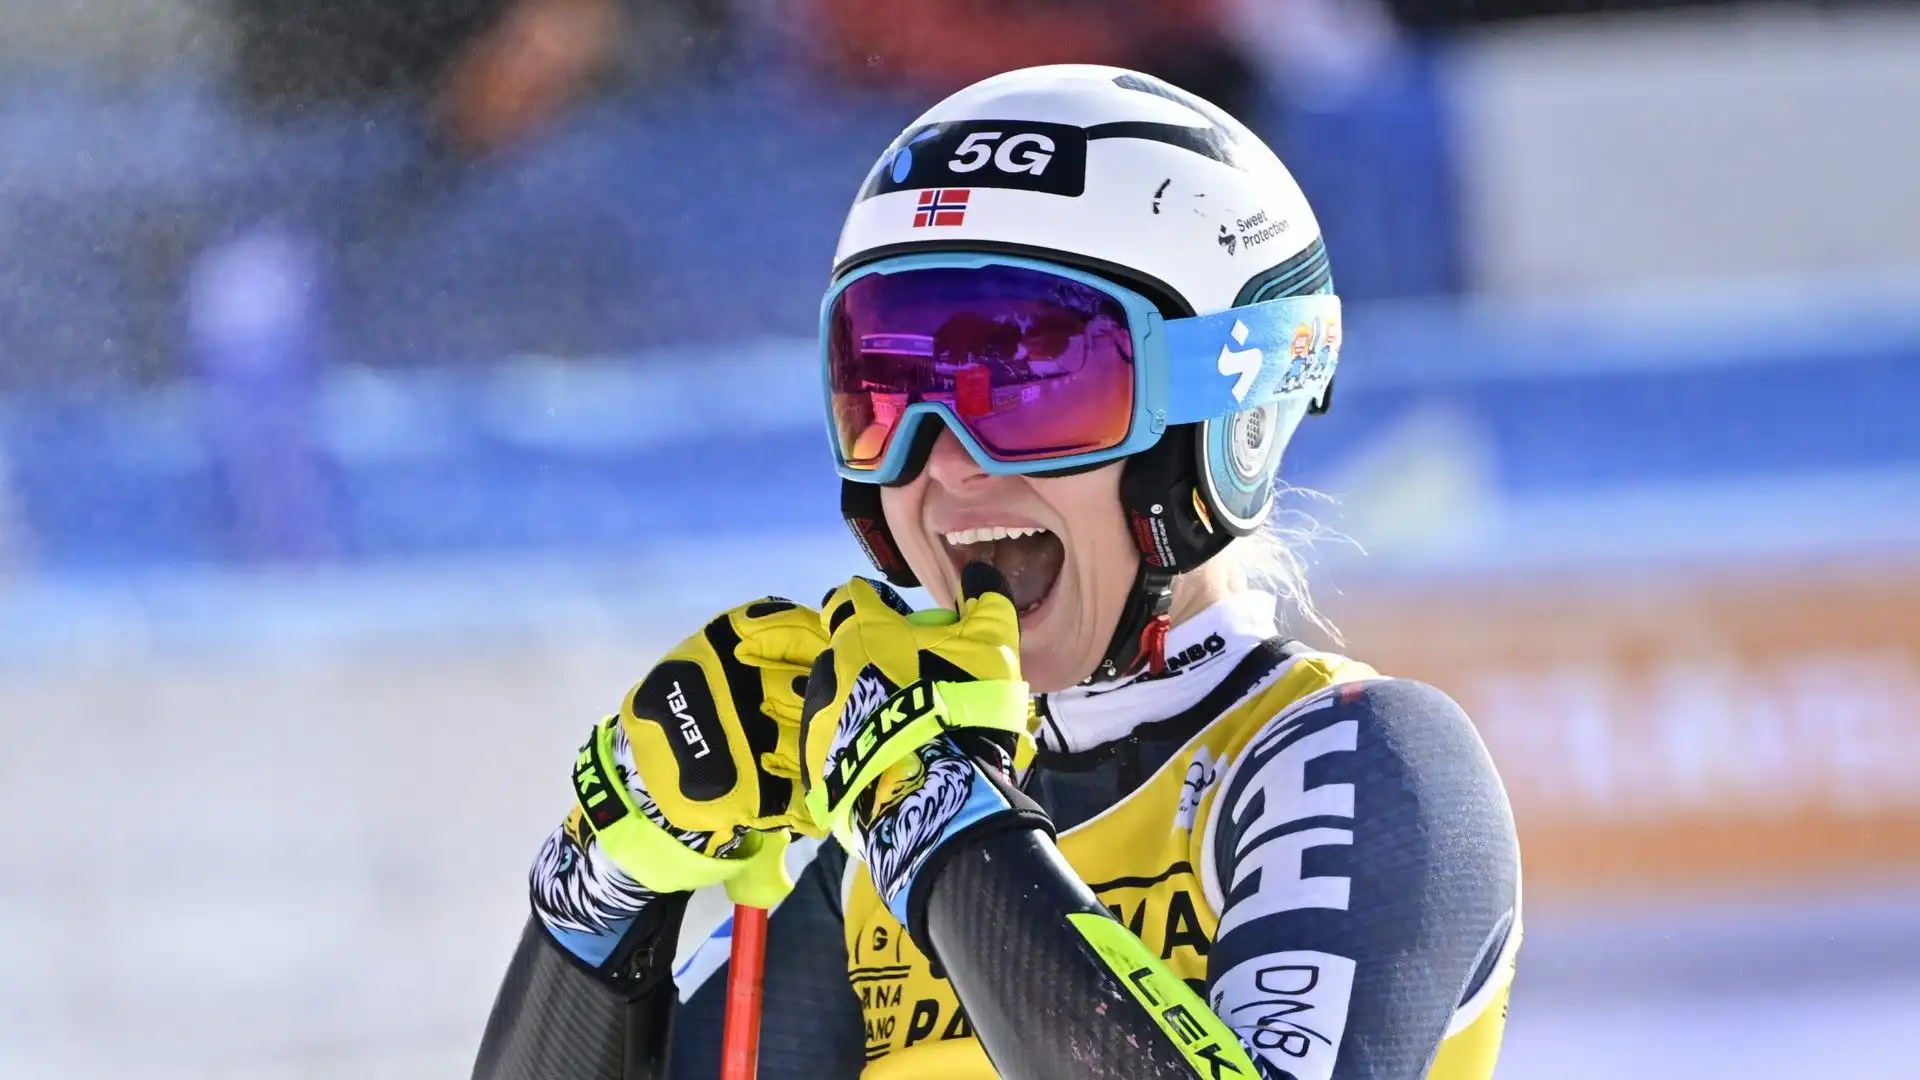 La sciatrice norvegese ha trionfato a Cortina nella gara valida per la Coppa del mondo